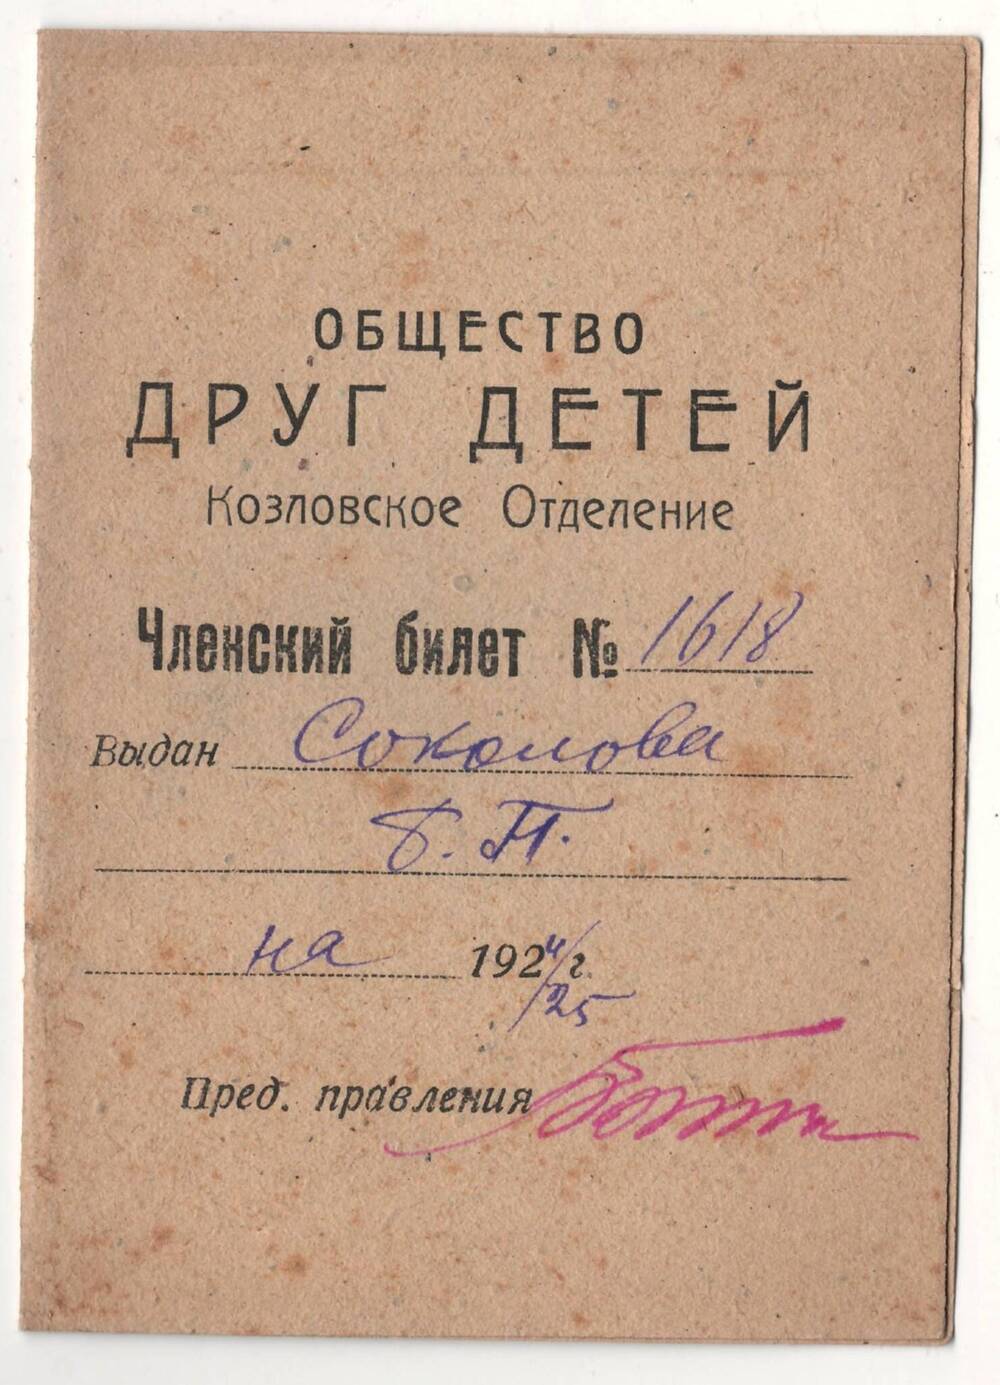 Членский билет общества Друг детей №1618 Соколова Б.П. на 1924-1925 г.